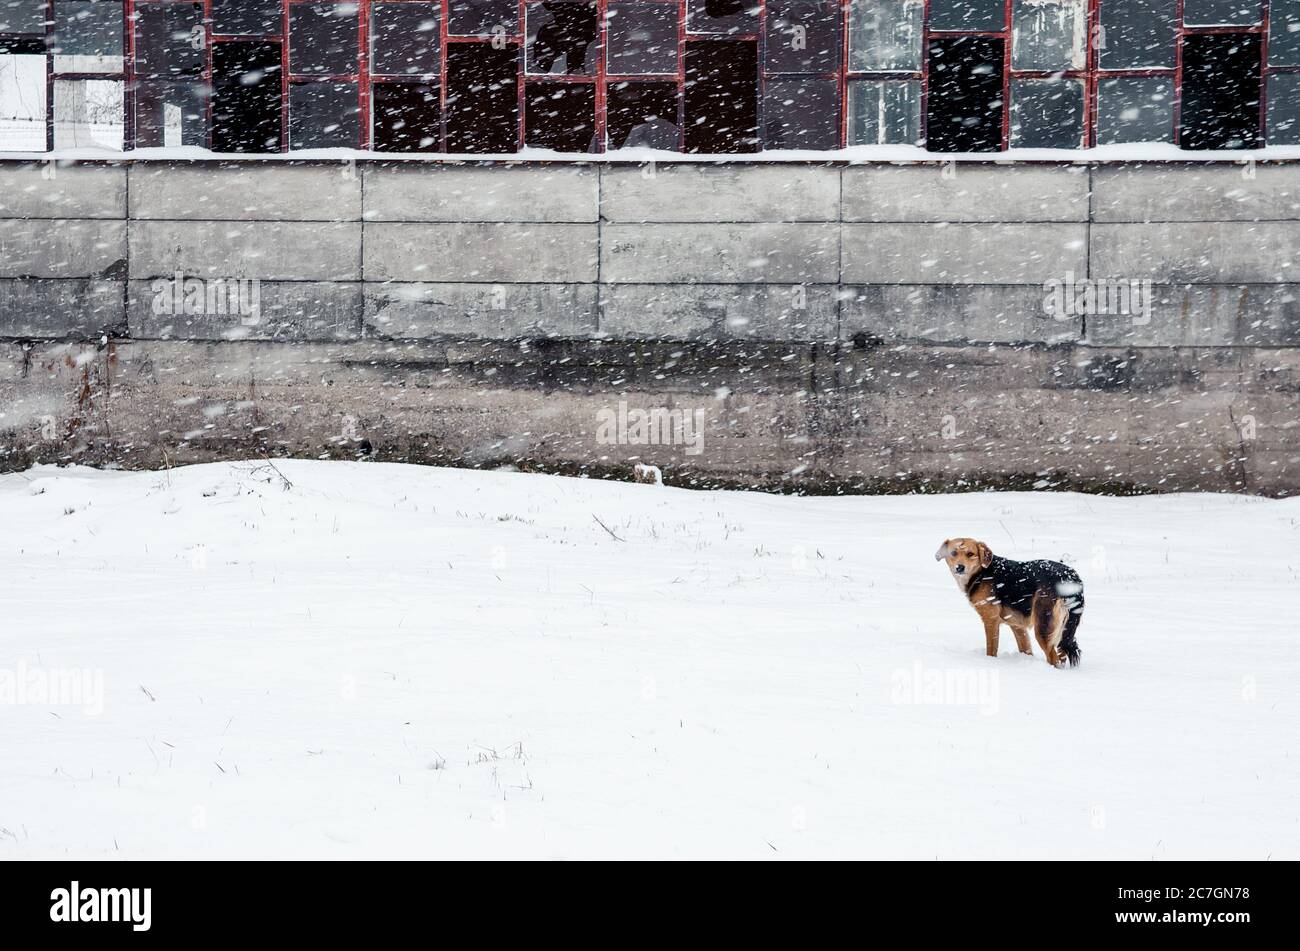 Cane in piedi in un terreno coperto di neve con un edificio abbandonato sullo sfondo Foto Stock